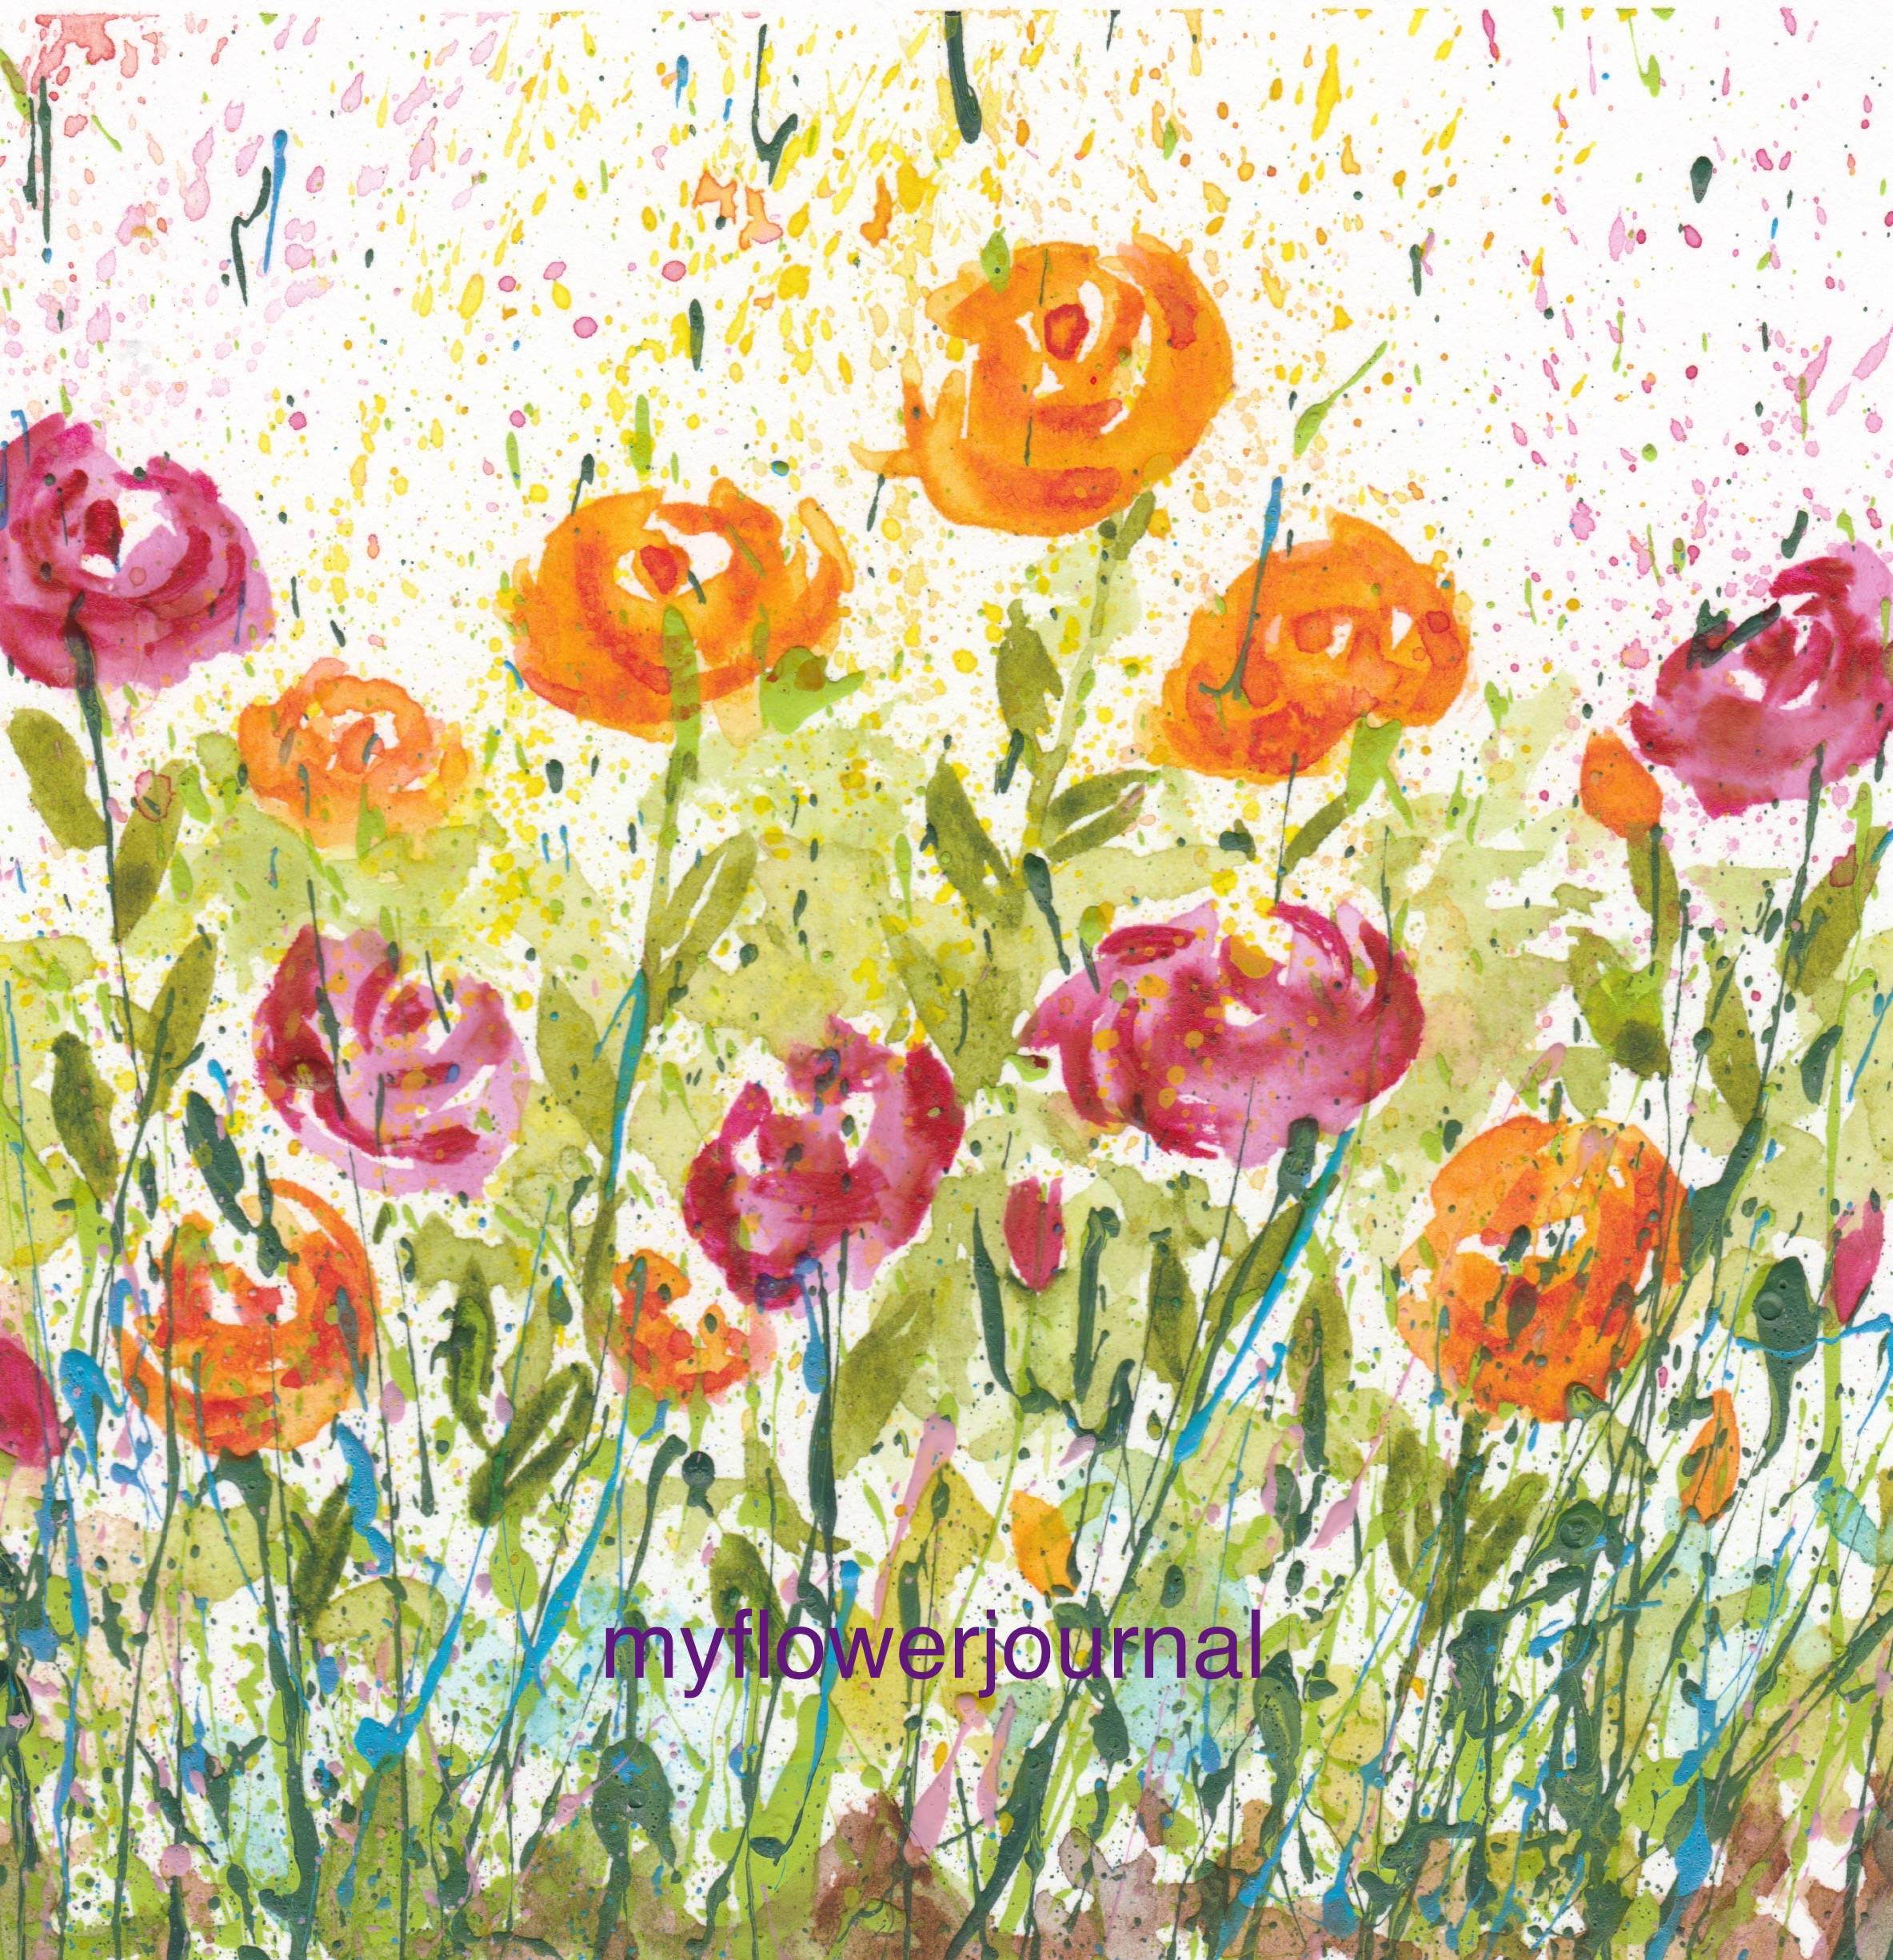 Using Flower Photos for Splattered Paint Art Inspiration ...